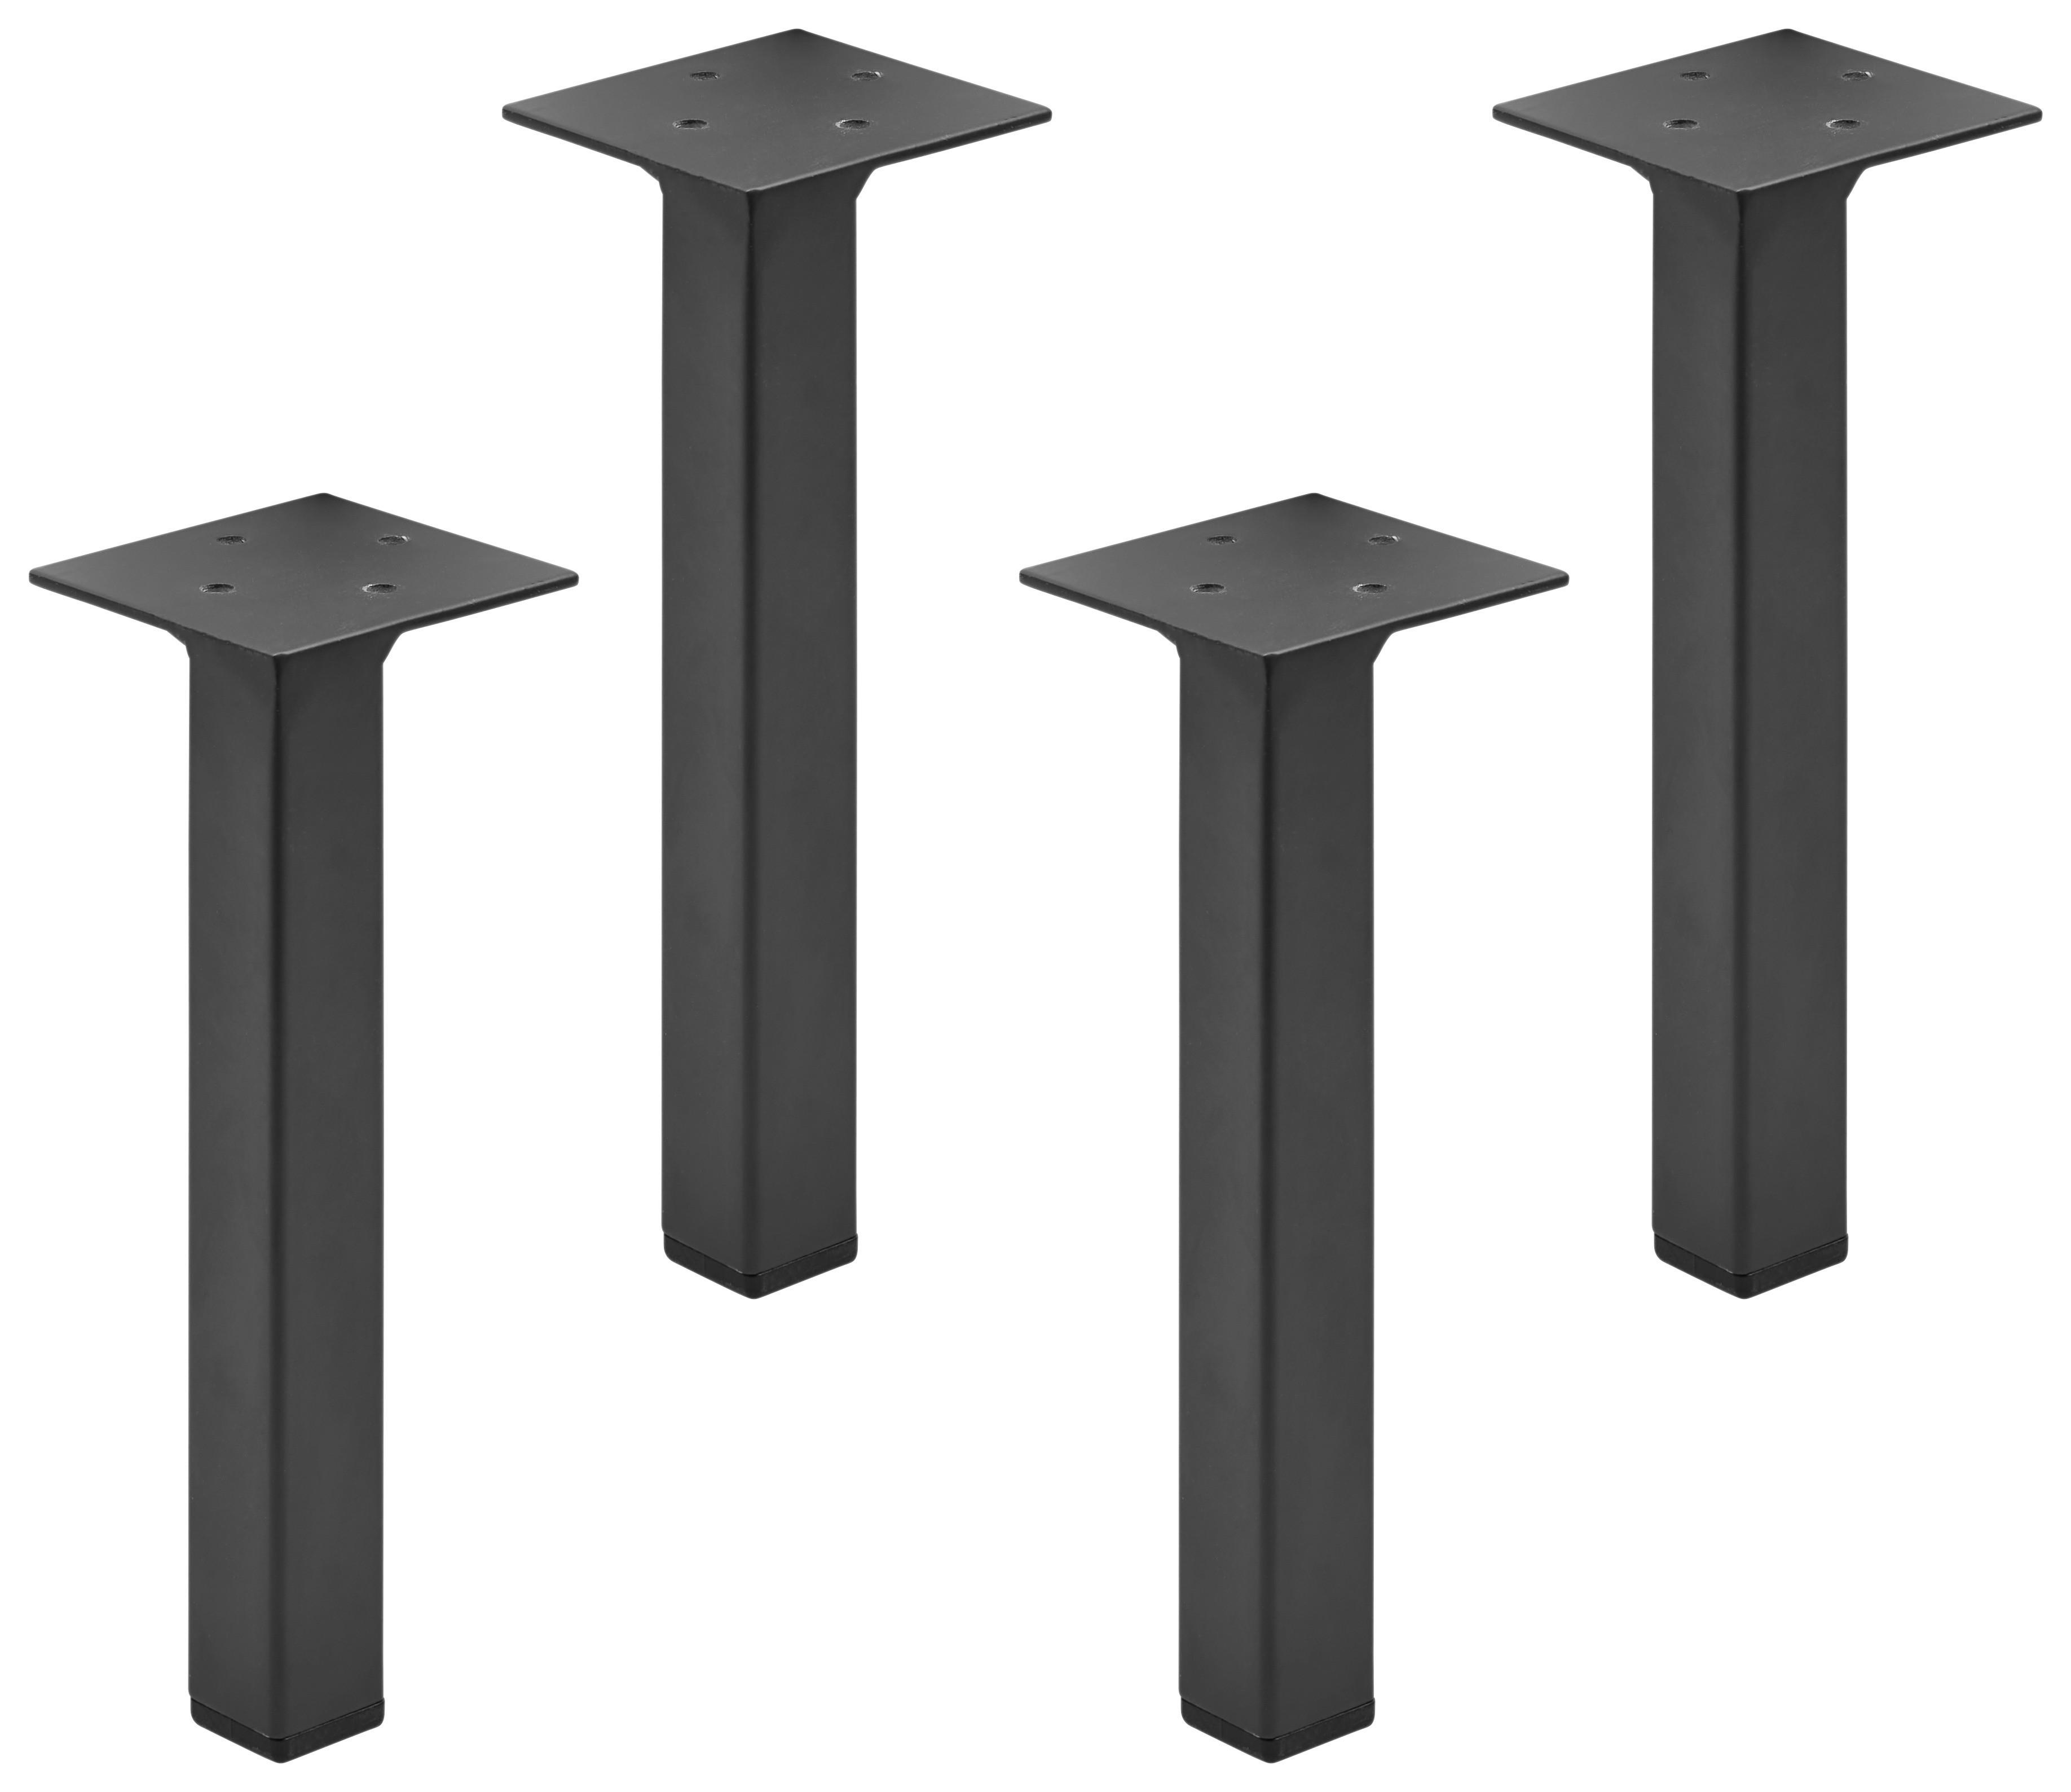 Fußset in Grau/Schwarz, 4-teilig - Schwarz/Grau, MODERN (11/15/11cm) - Based